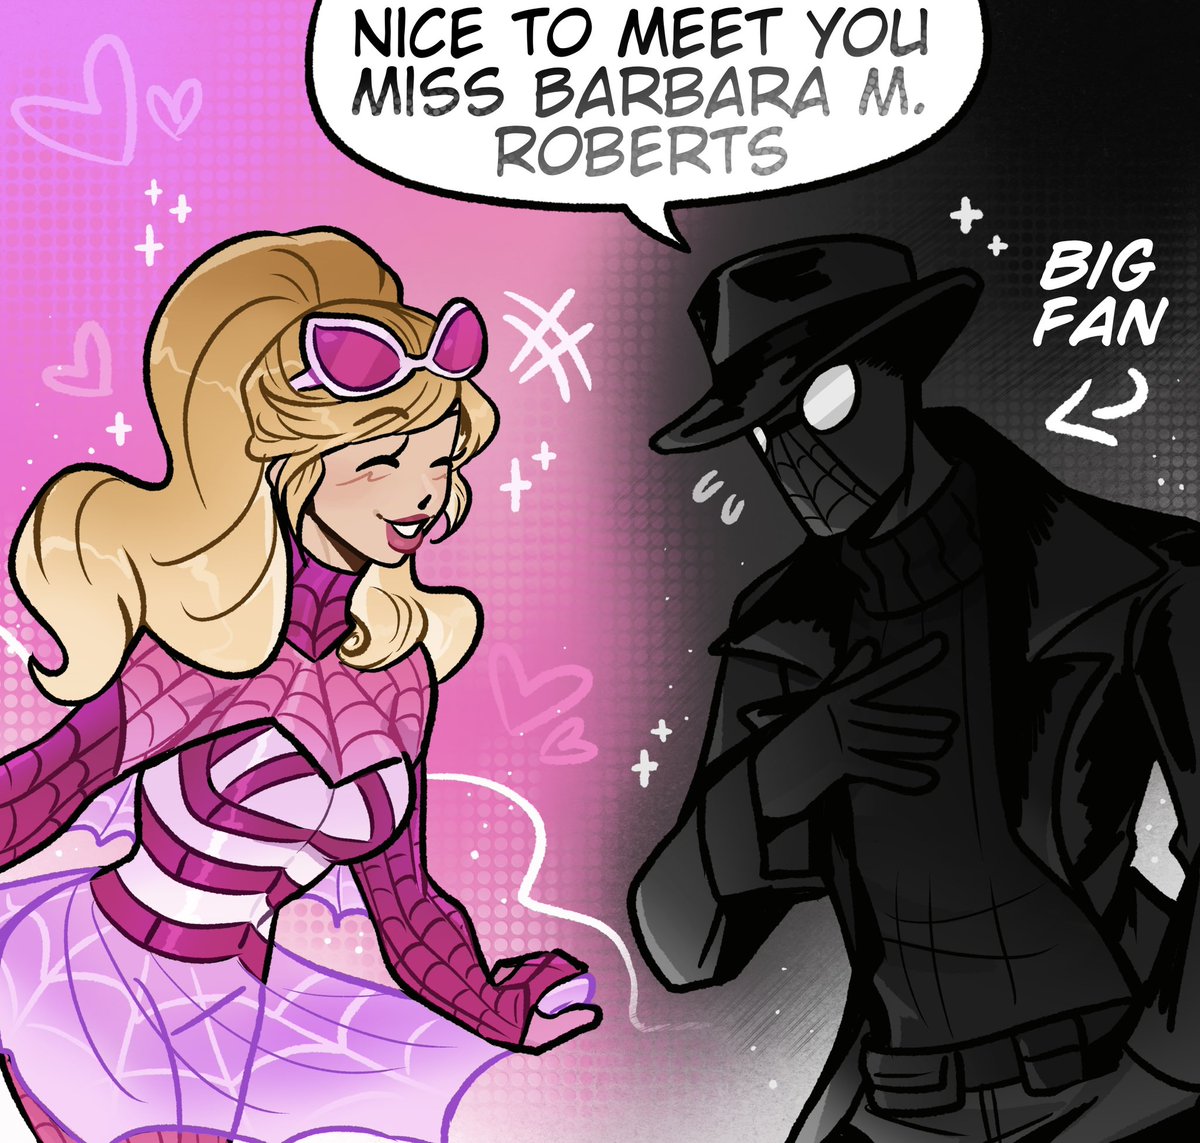 Noir finally gets to meet his hero, Barbie